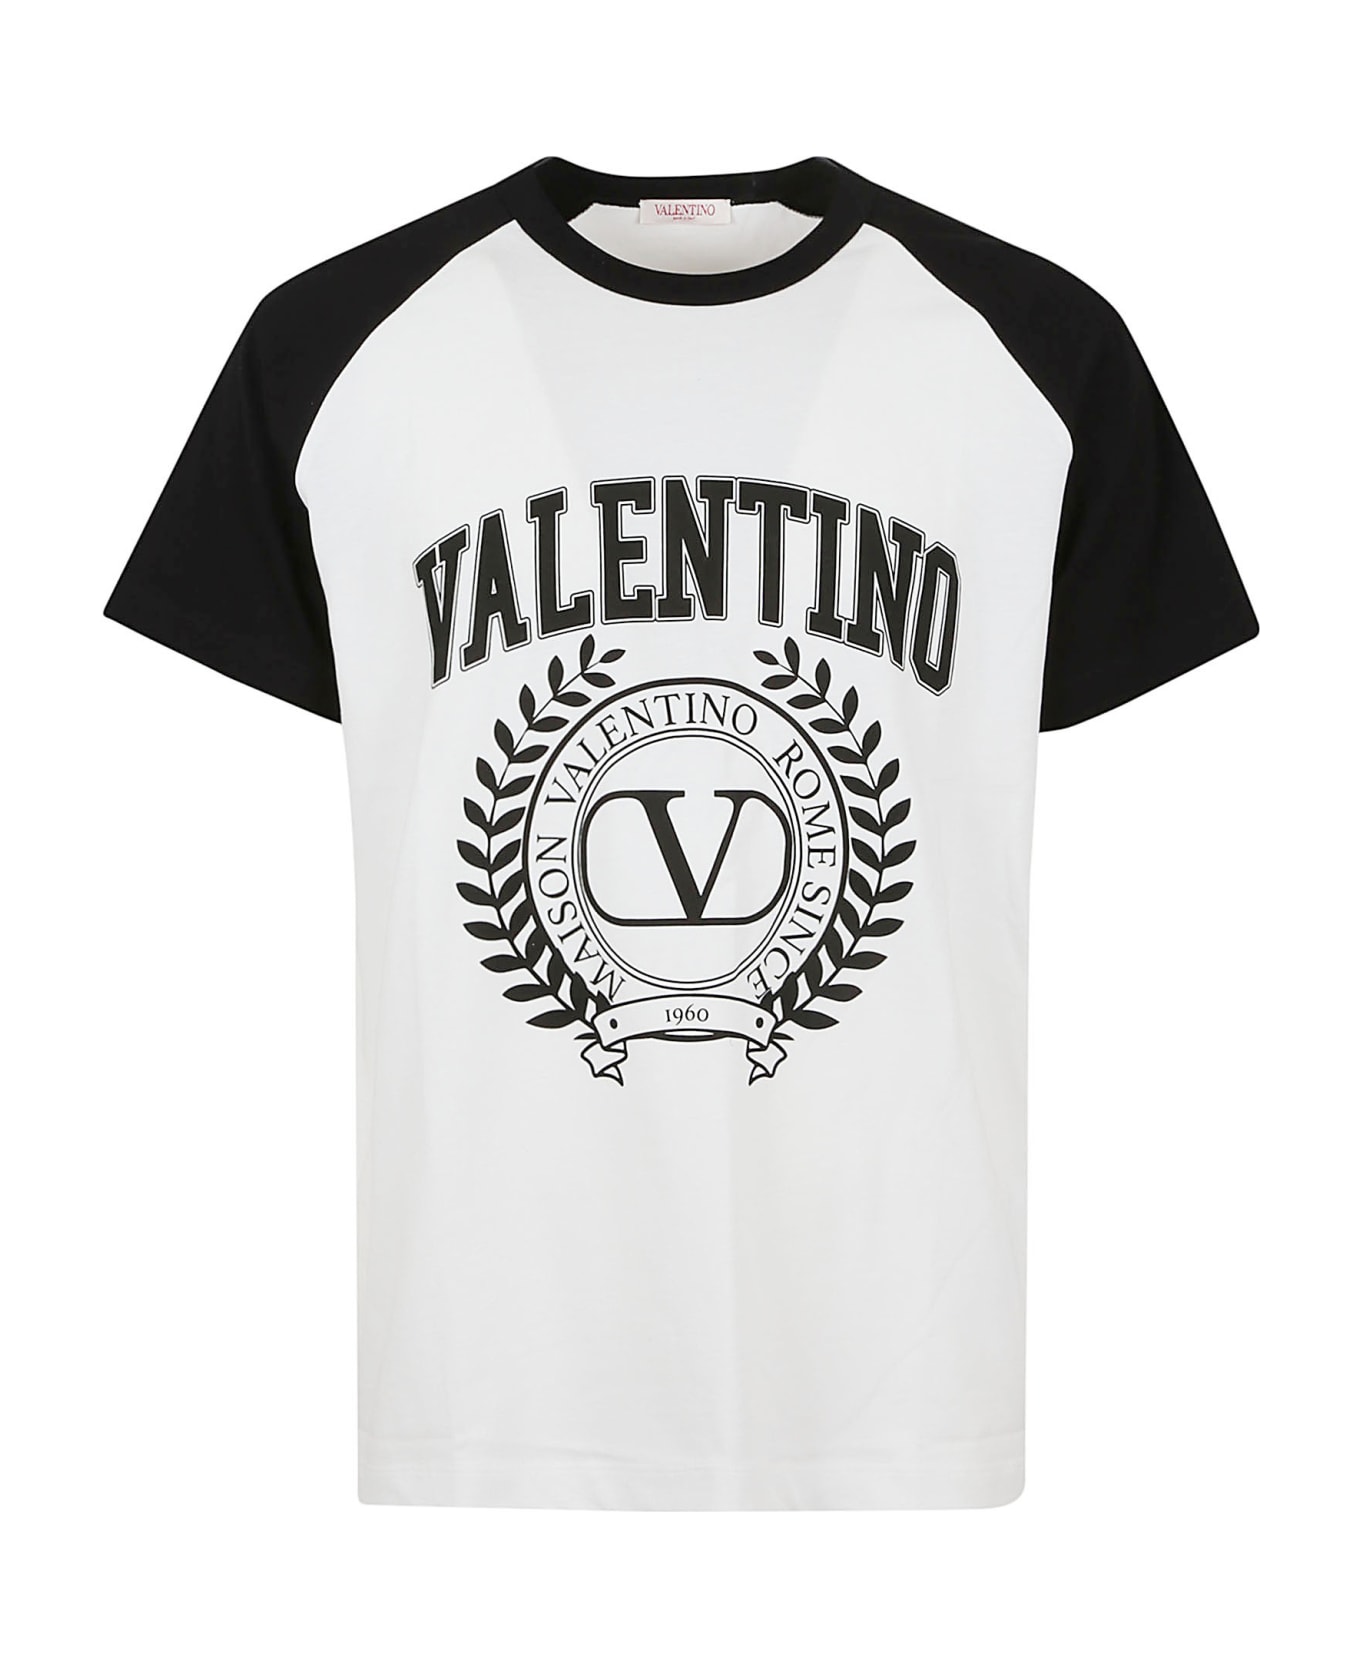 Valentino Garavani T-shirt Maison Valentino - Bianco Nero